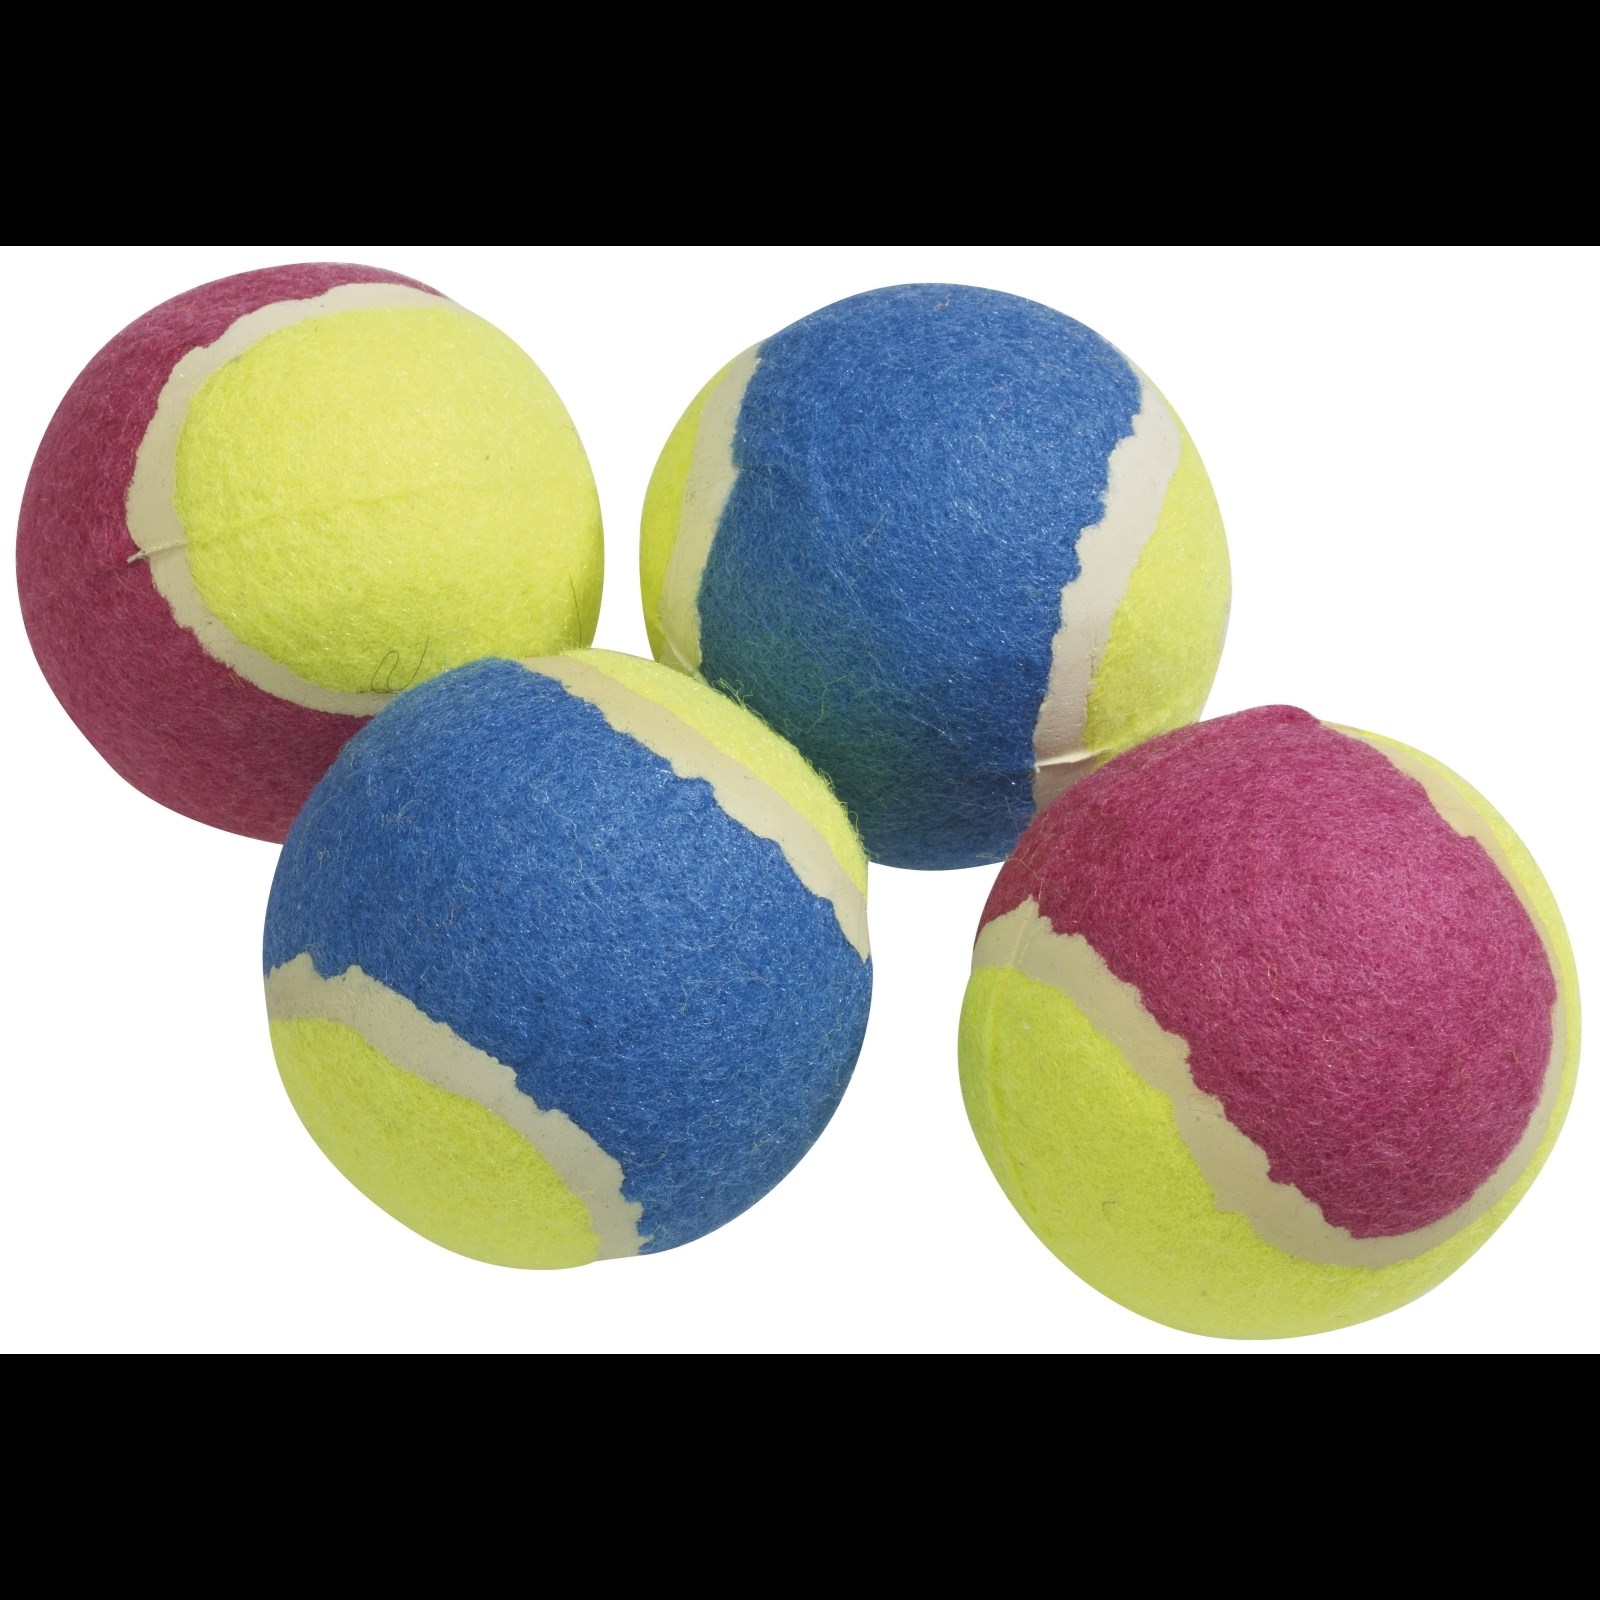 Jouet p. chiens balle tennis 4 pcs Acheter - Accessoires pour